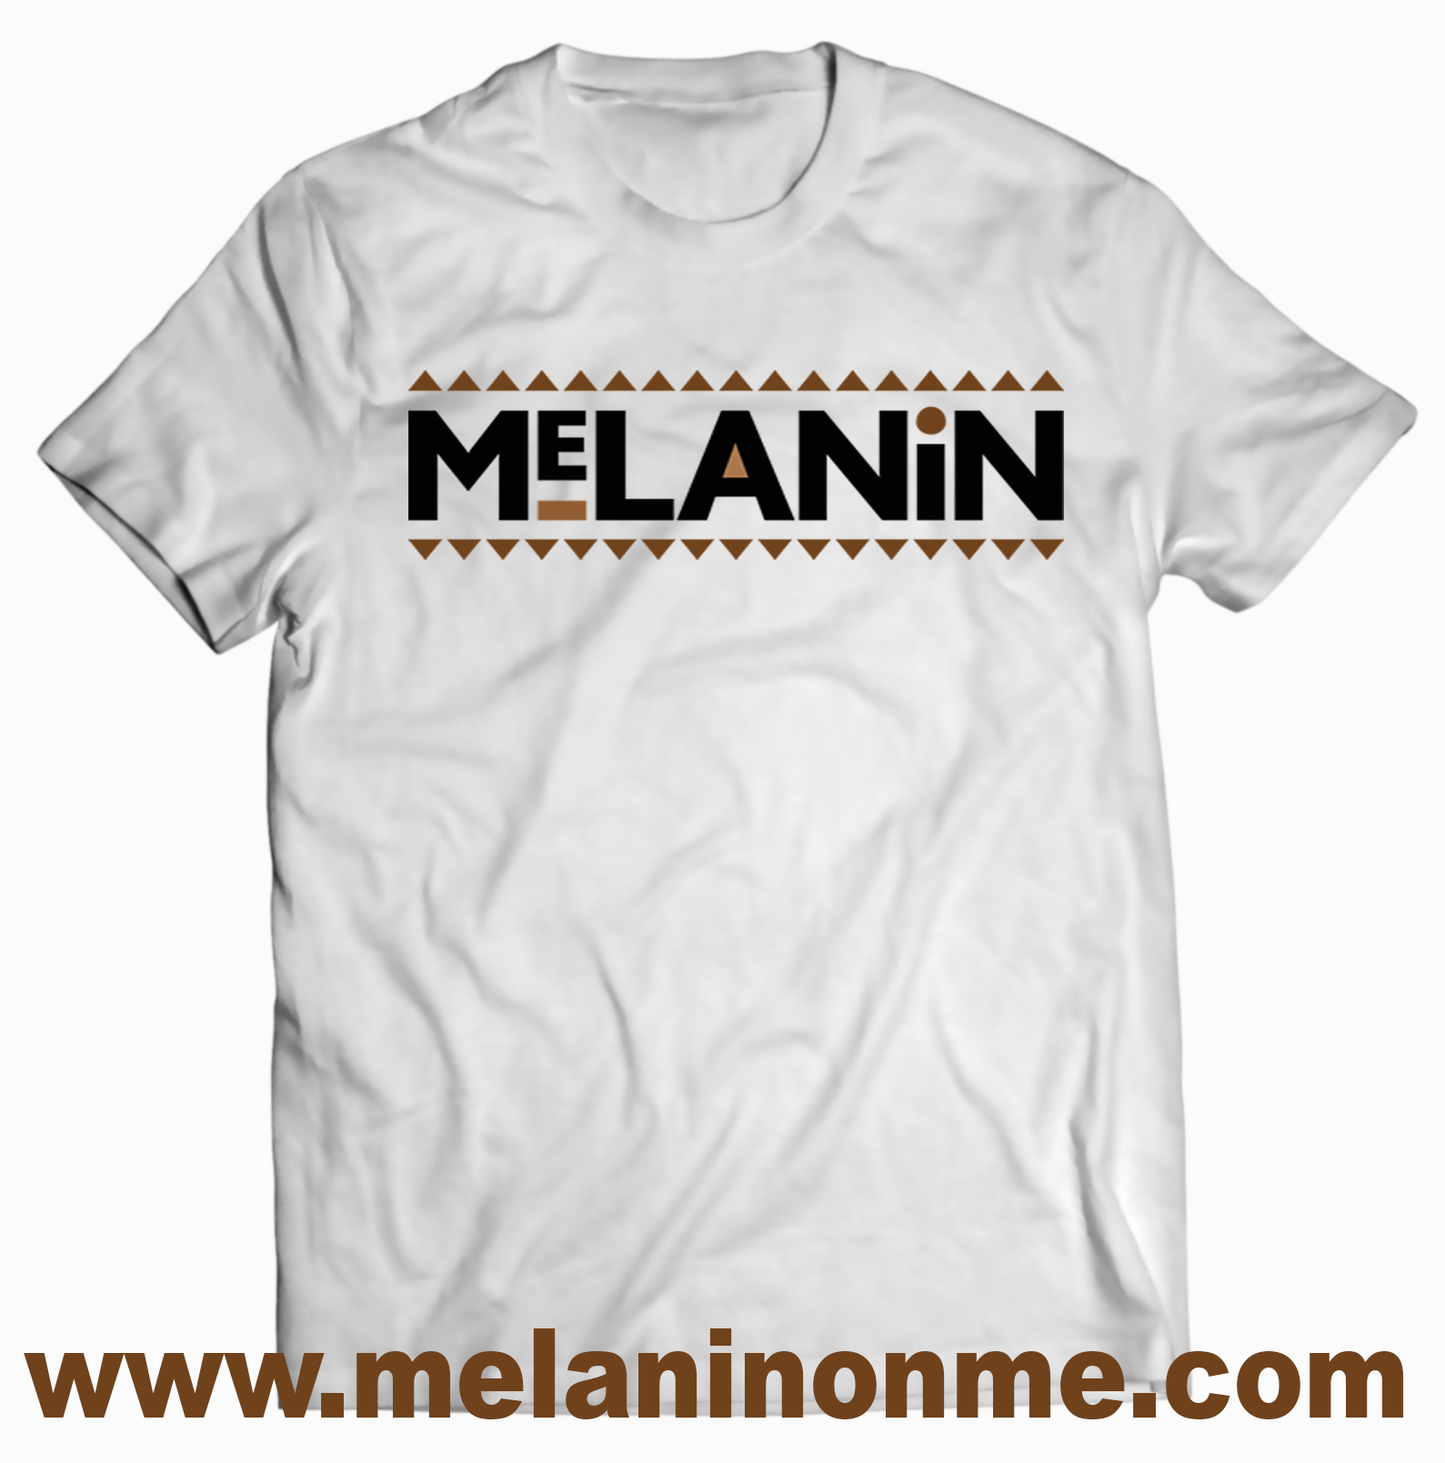 Melanin Martin Tshirt - Unisex